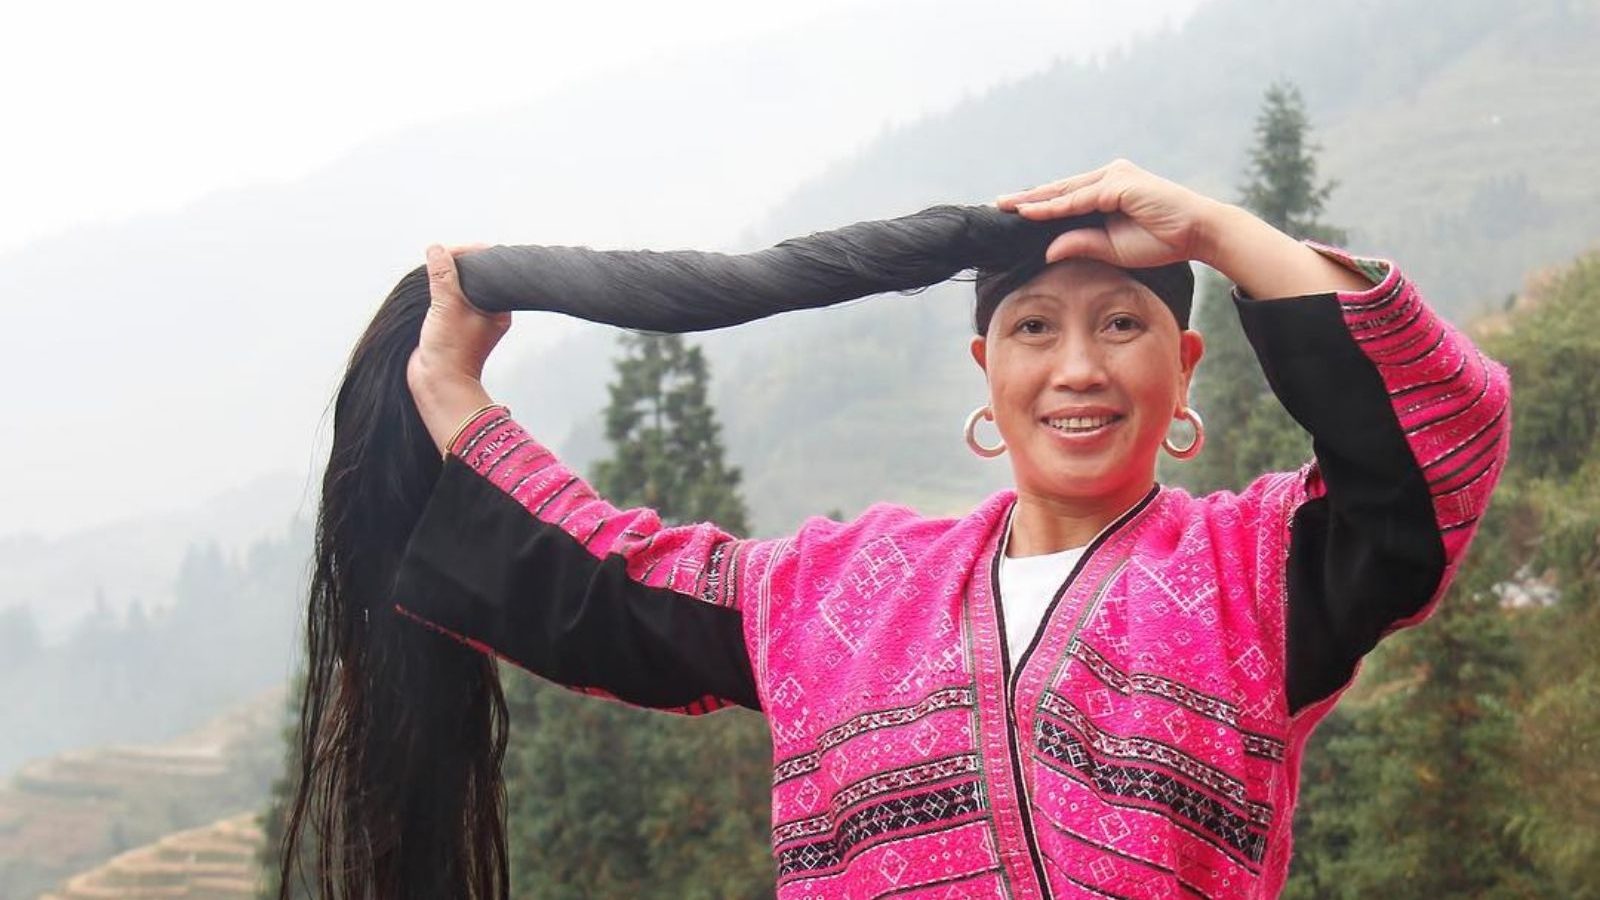 अनोखा गांव जहां महिलाओं के कद से लंबे हैं उनके बाल! जिंदगी में सिर्फ एक बार  काटती हैं अपनी जुल्फें - chinese long hair village yao women cut hairs only  once in